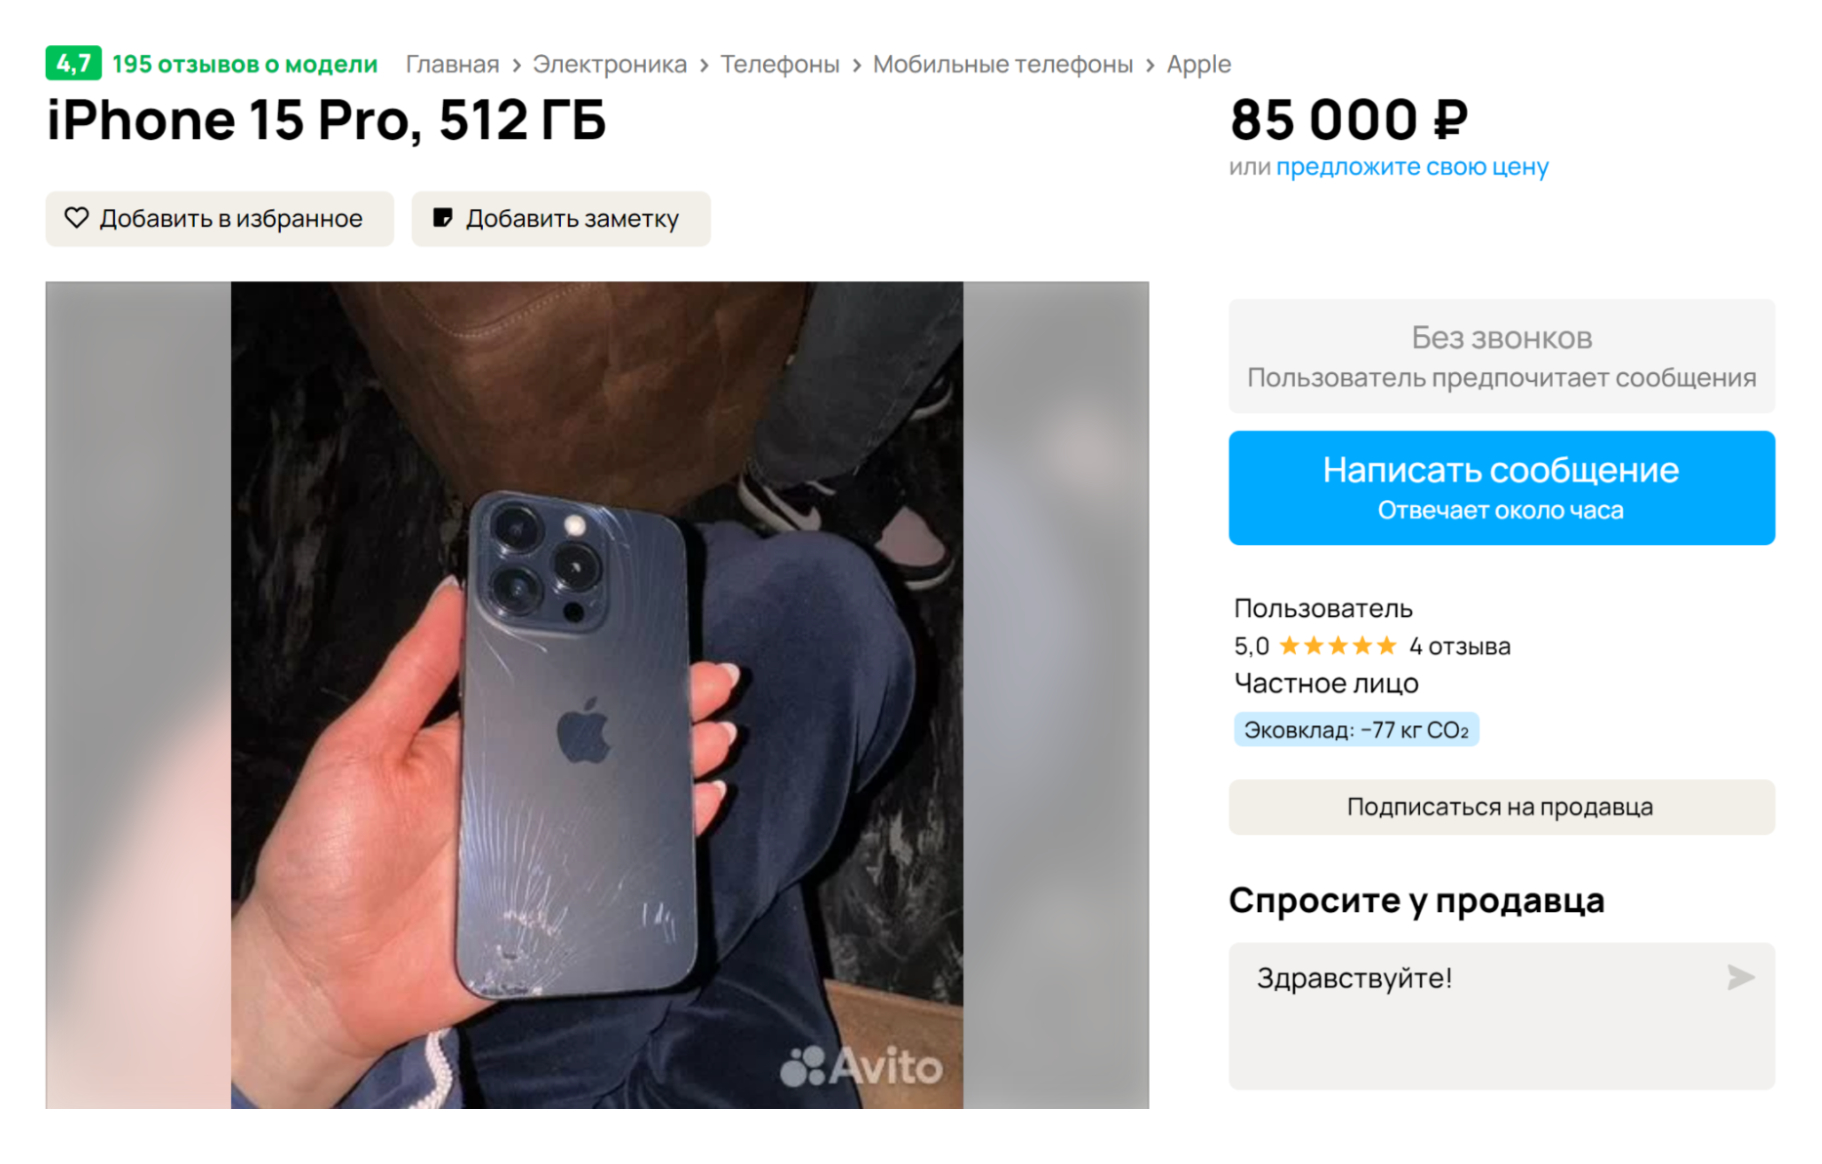 Разбитый, но полностью исправный iPhone 15 Pro продают лишь немного дешевле, чем в серой рознице. Платный ремонт с использованием оригинальной запчасти обойдется примерно в 30 000 ₽. Источник: avito.ru